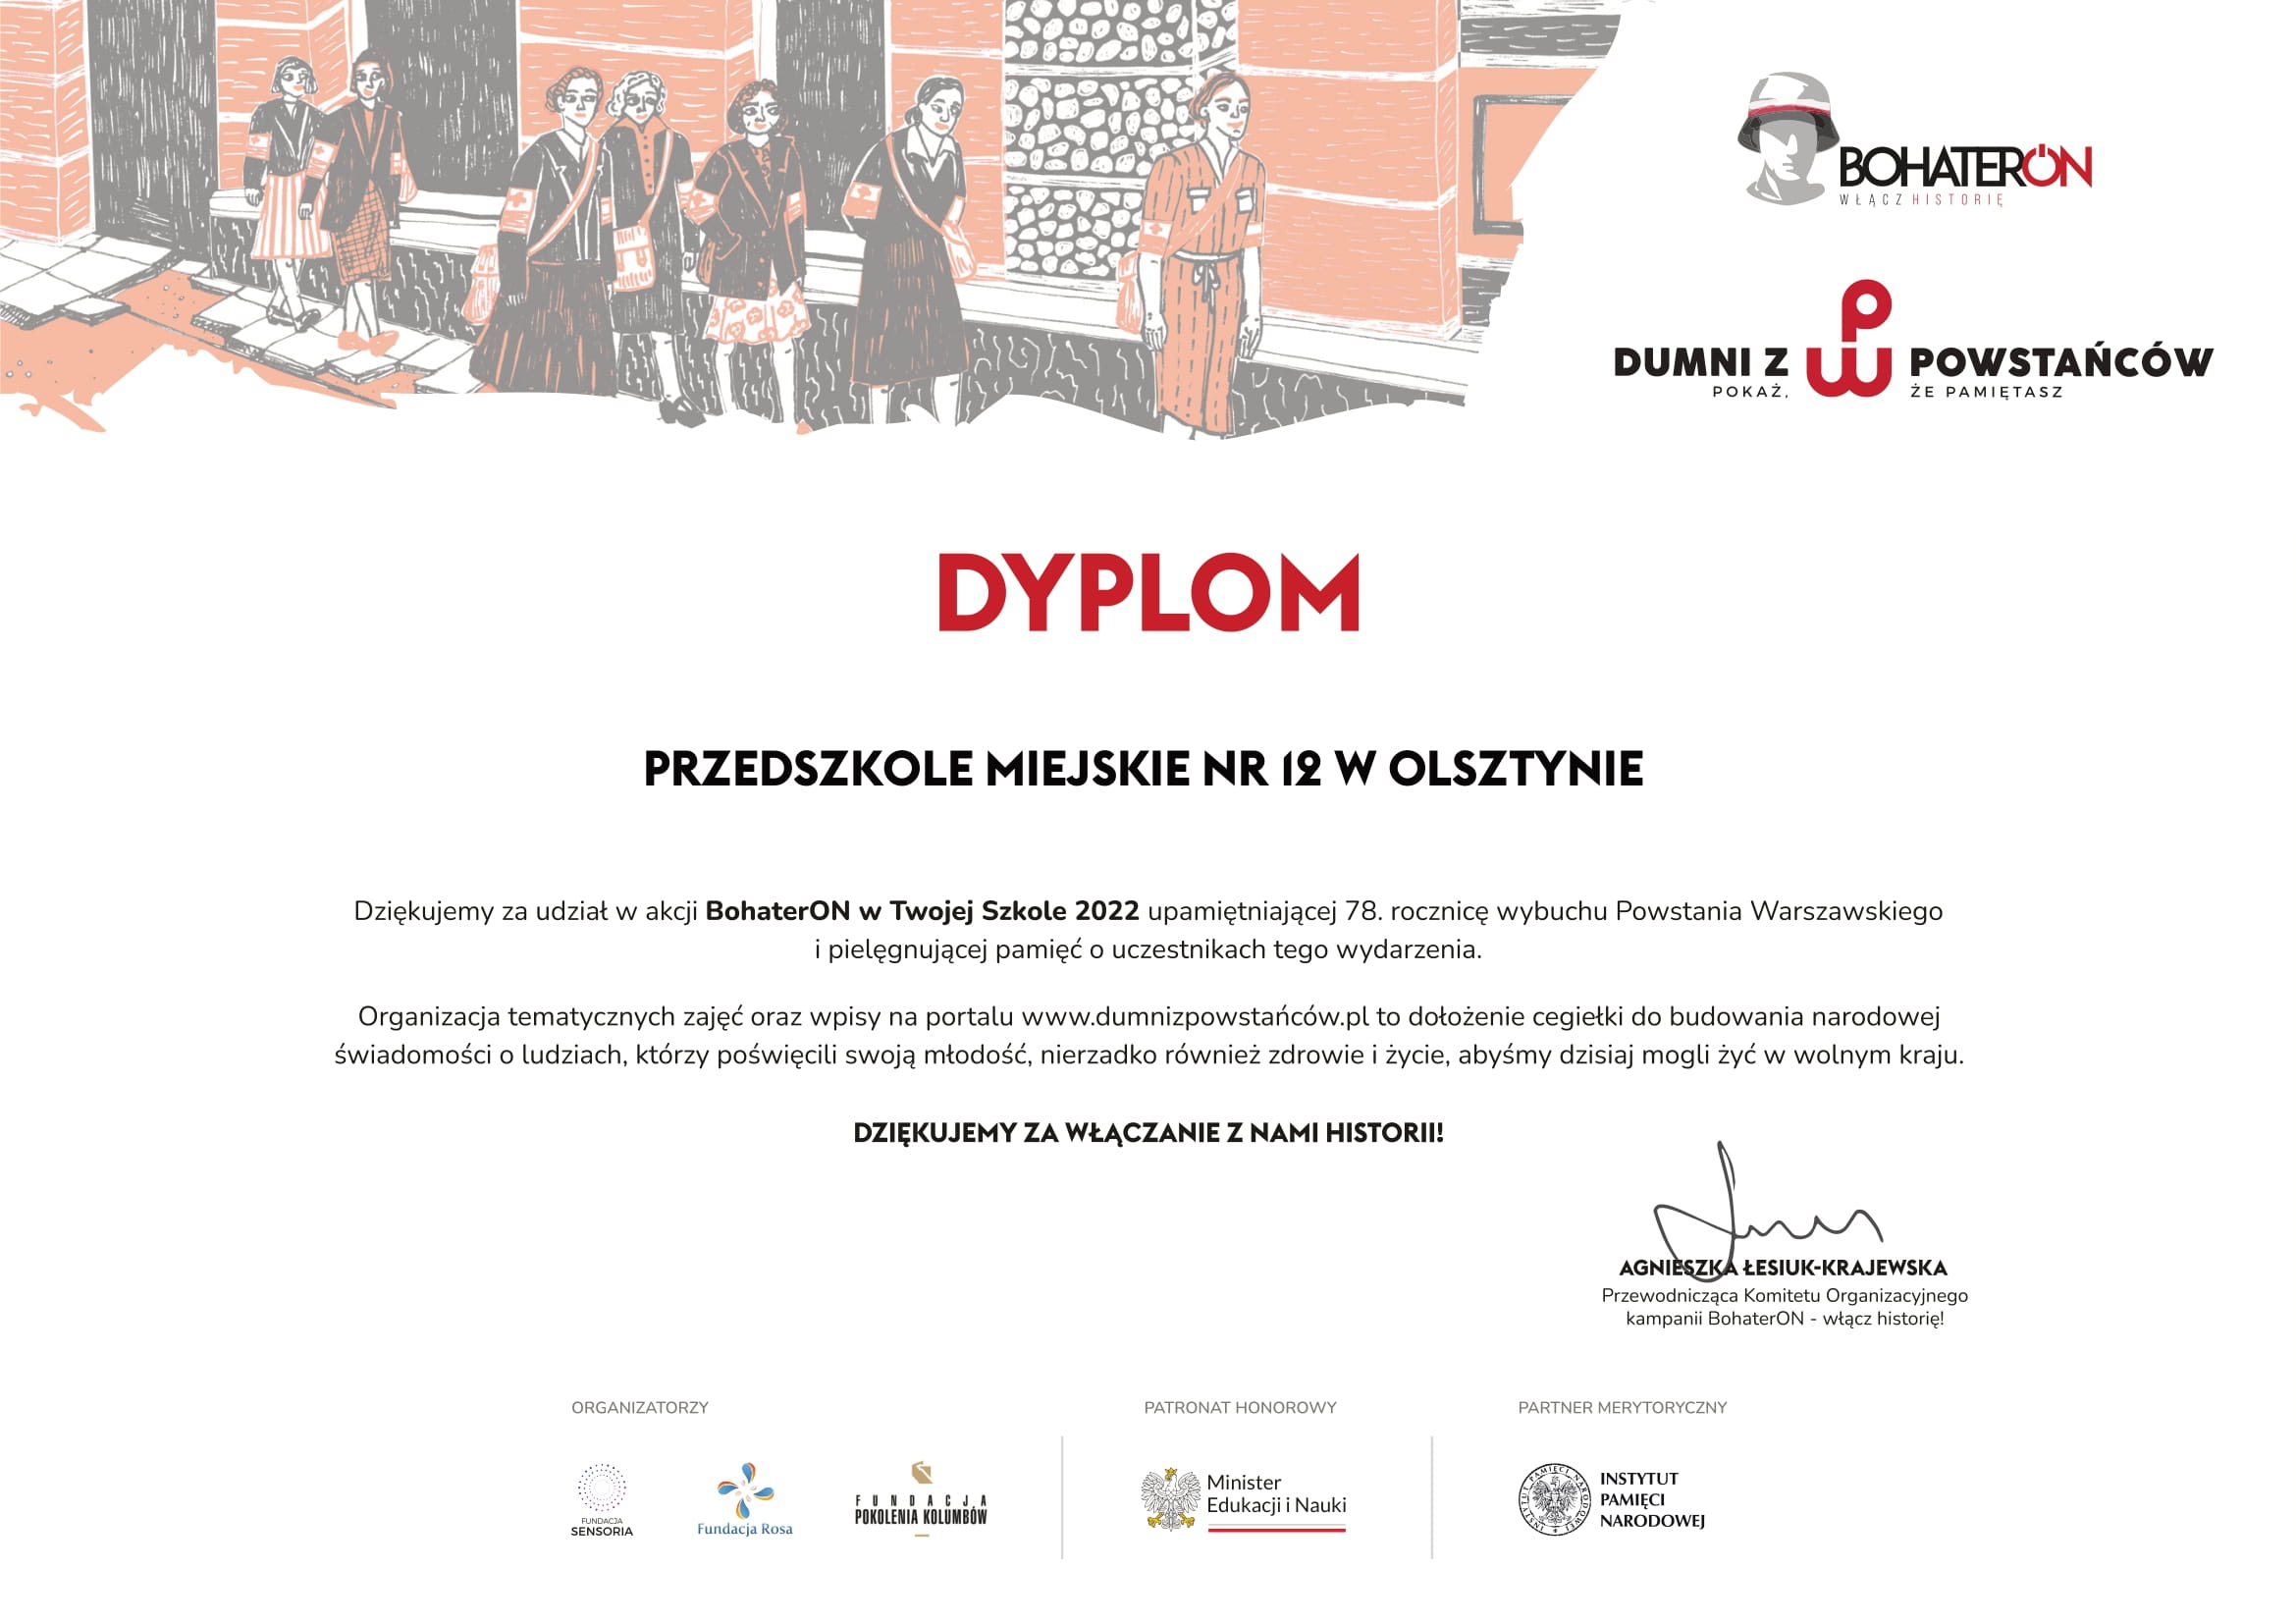 Dyplom dla Przedszkola Miejskiego nr 12 w Olsztynie za udział w akcji Bohater On